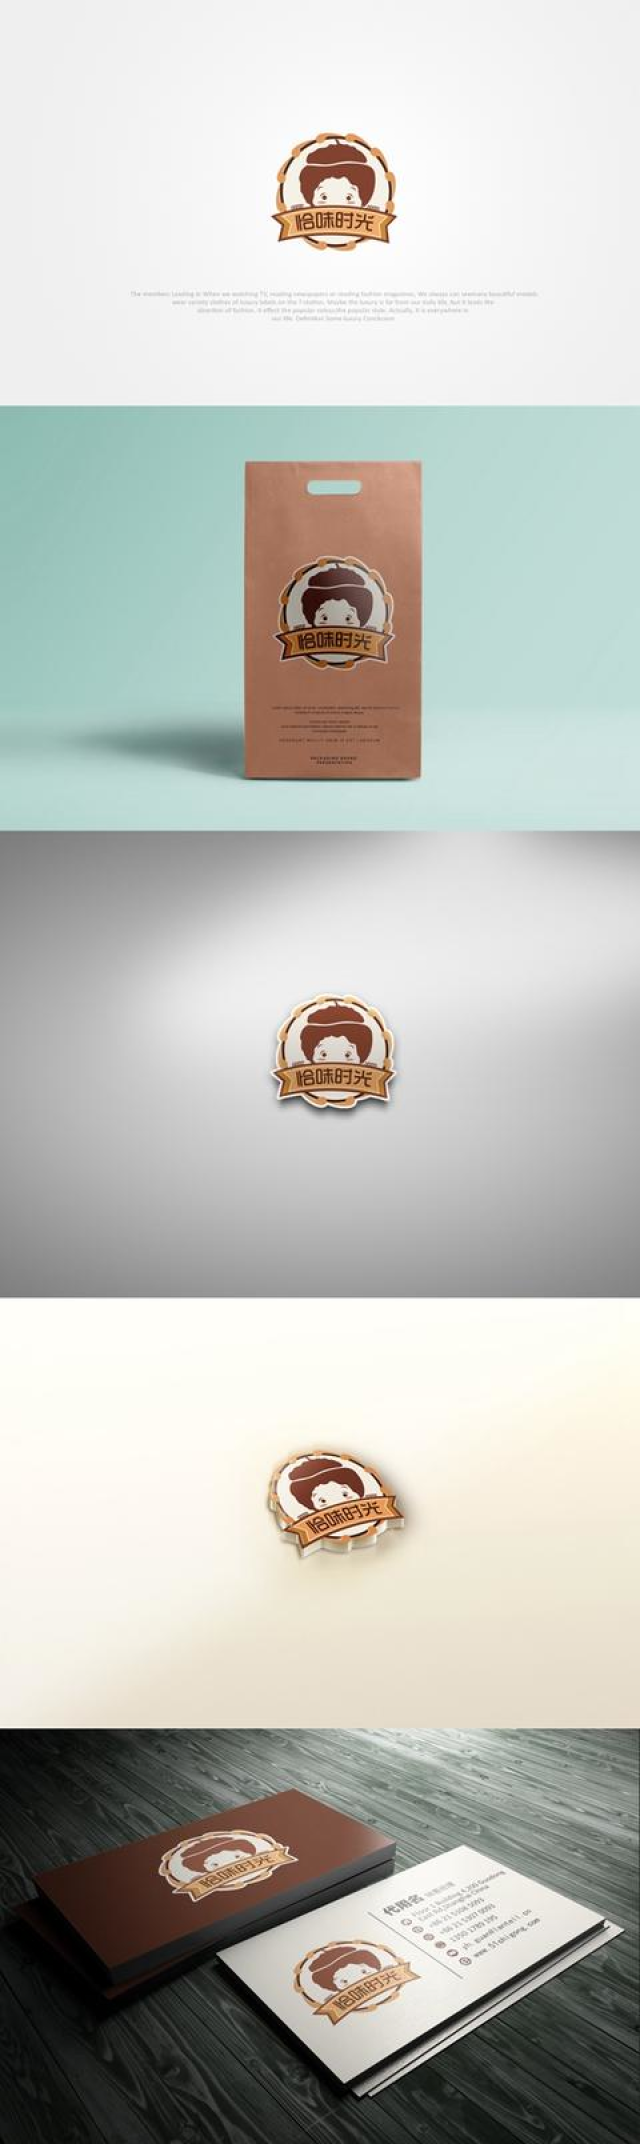 坚果零食产品logo 坚果零食产品品牌logo,这种卡通化的logo都非常可爱